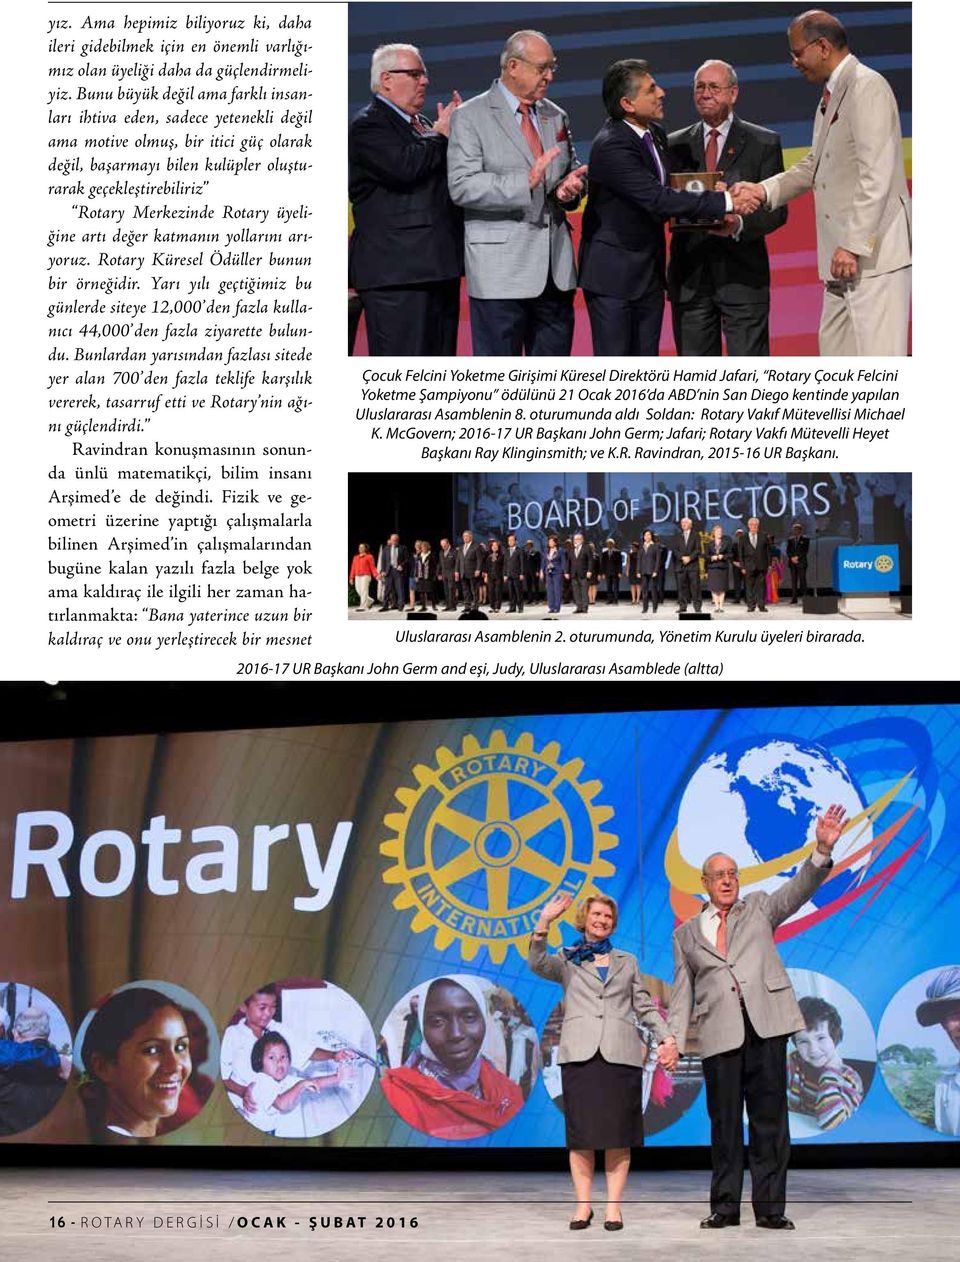 Rotary üyeliğine artı değer katmanın yollarını arıyoruz. Rotary Küresel Ödüller bunun bir örneğidir.